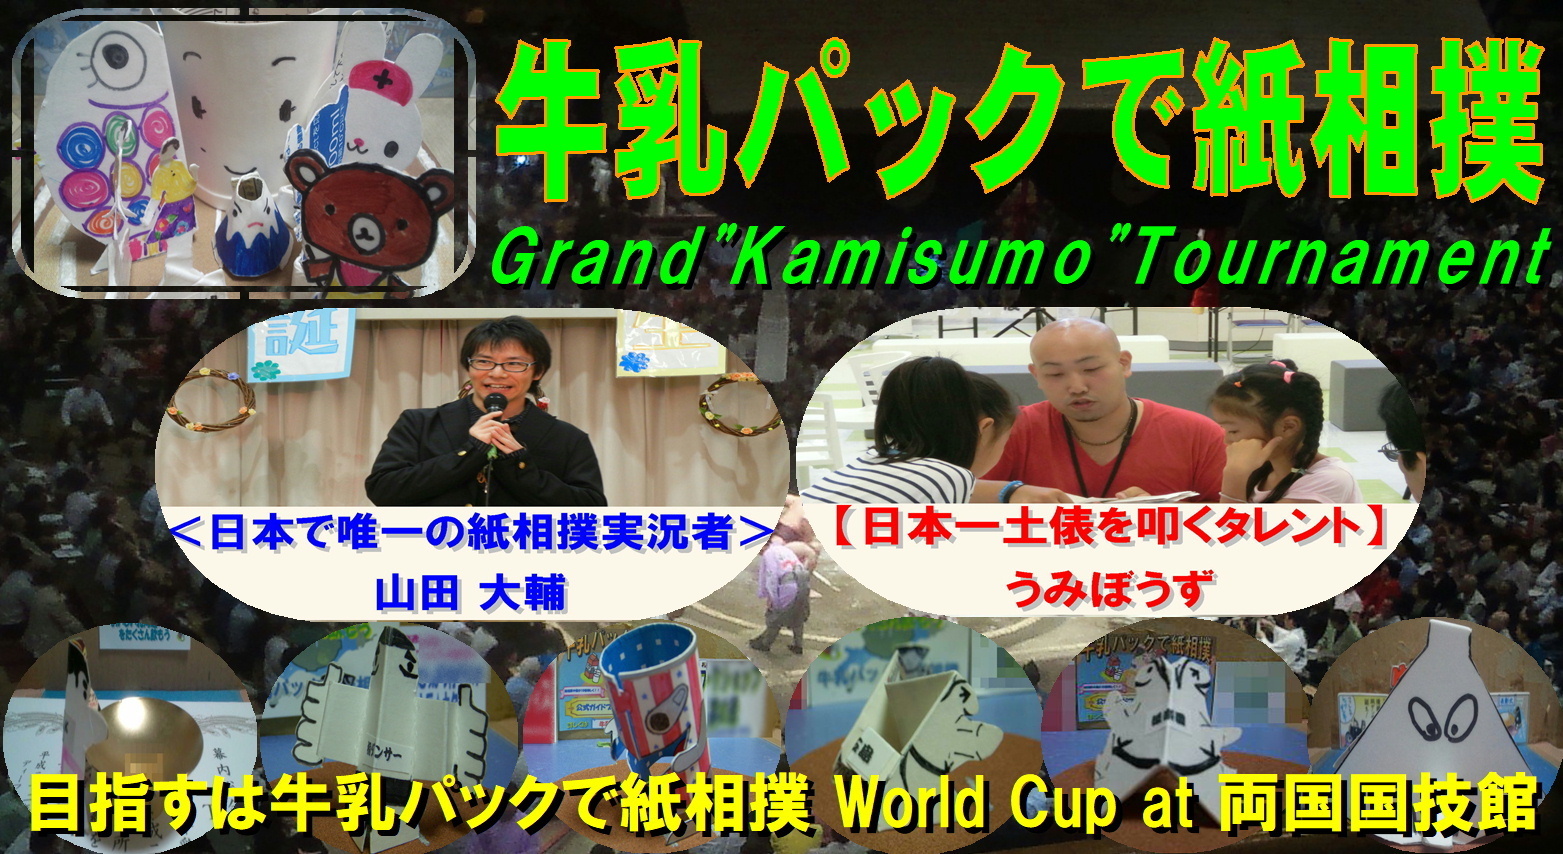 牛乳パックで紙相撲 地域 世代間交流 国際交流 北海道発 牛乳パックで紙相撲 公式ブログ grand kamisumo tournament